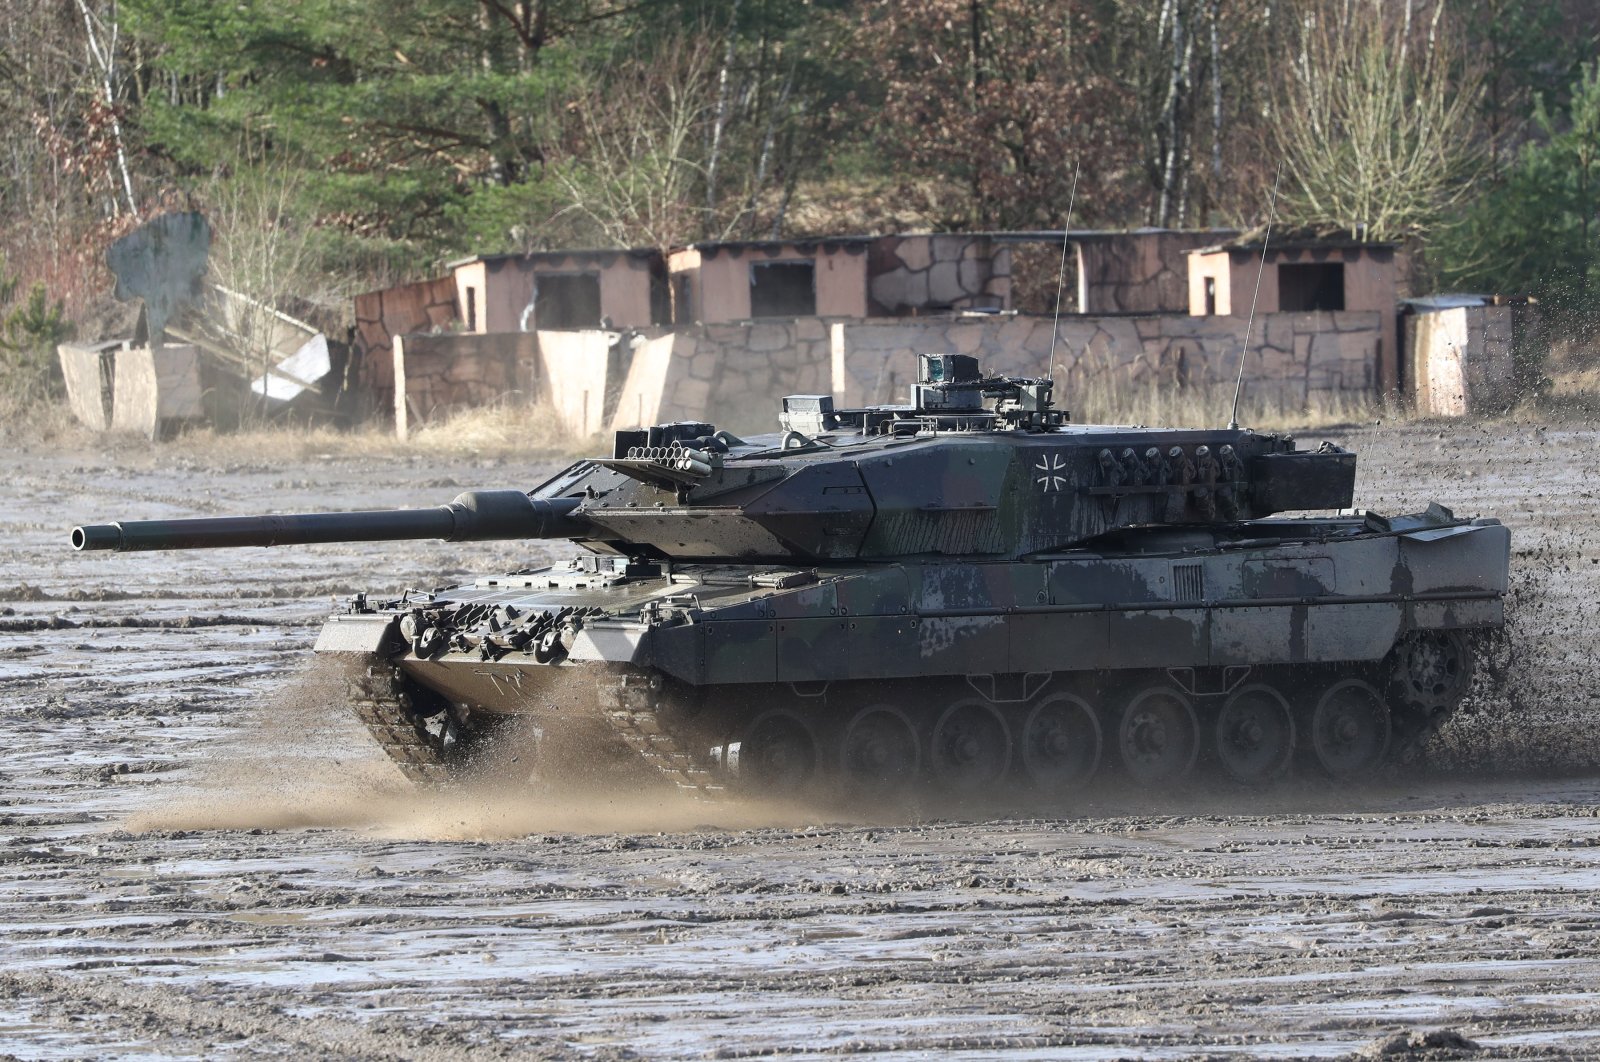 Pengiriman tank tidak akan memasuki perang: Menteri Kehakiman Jerman